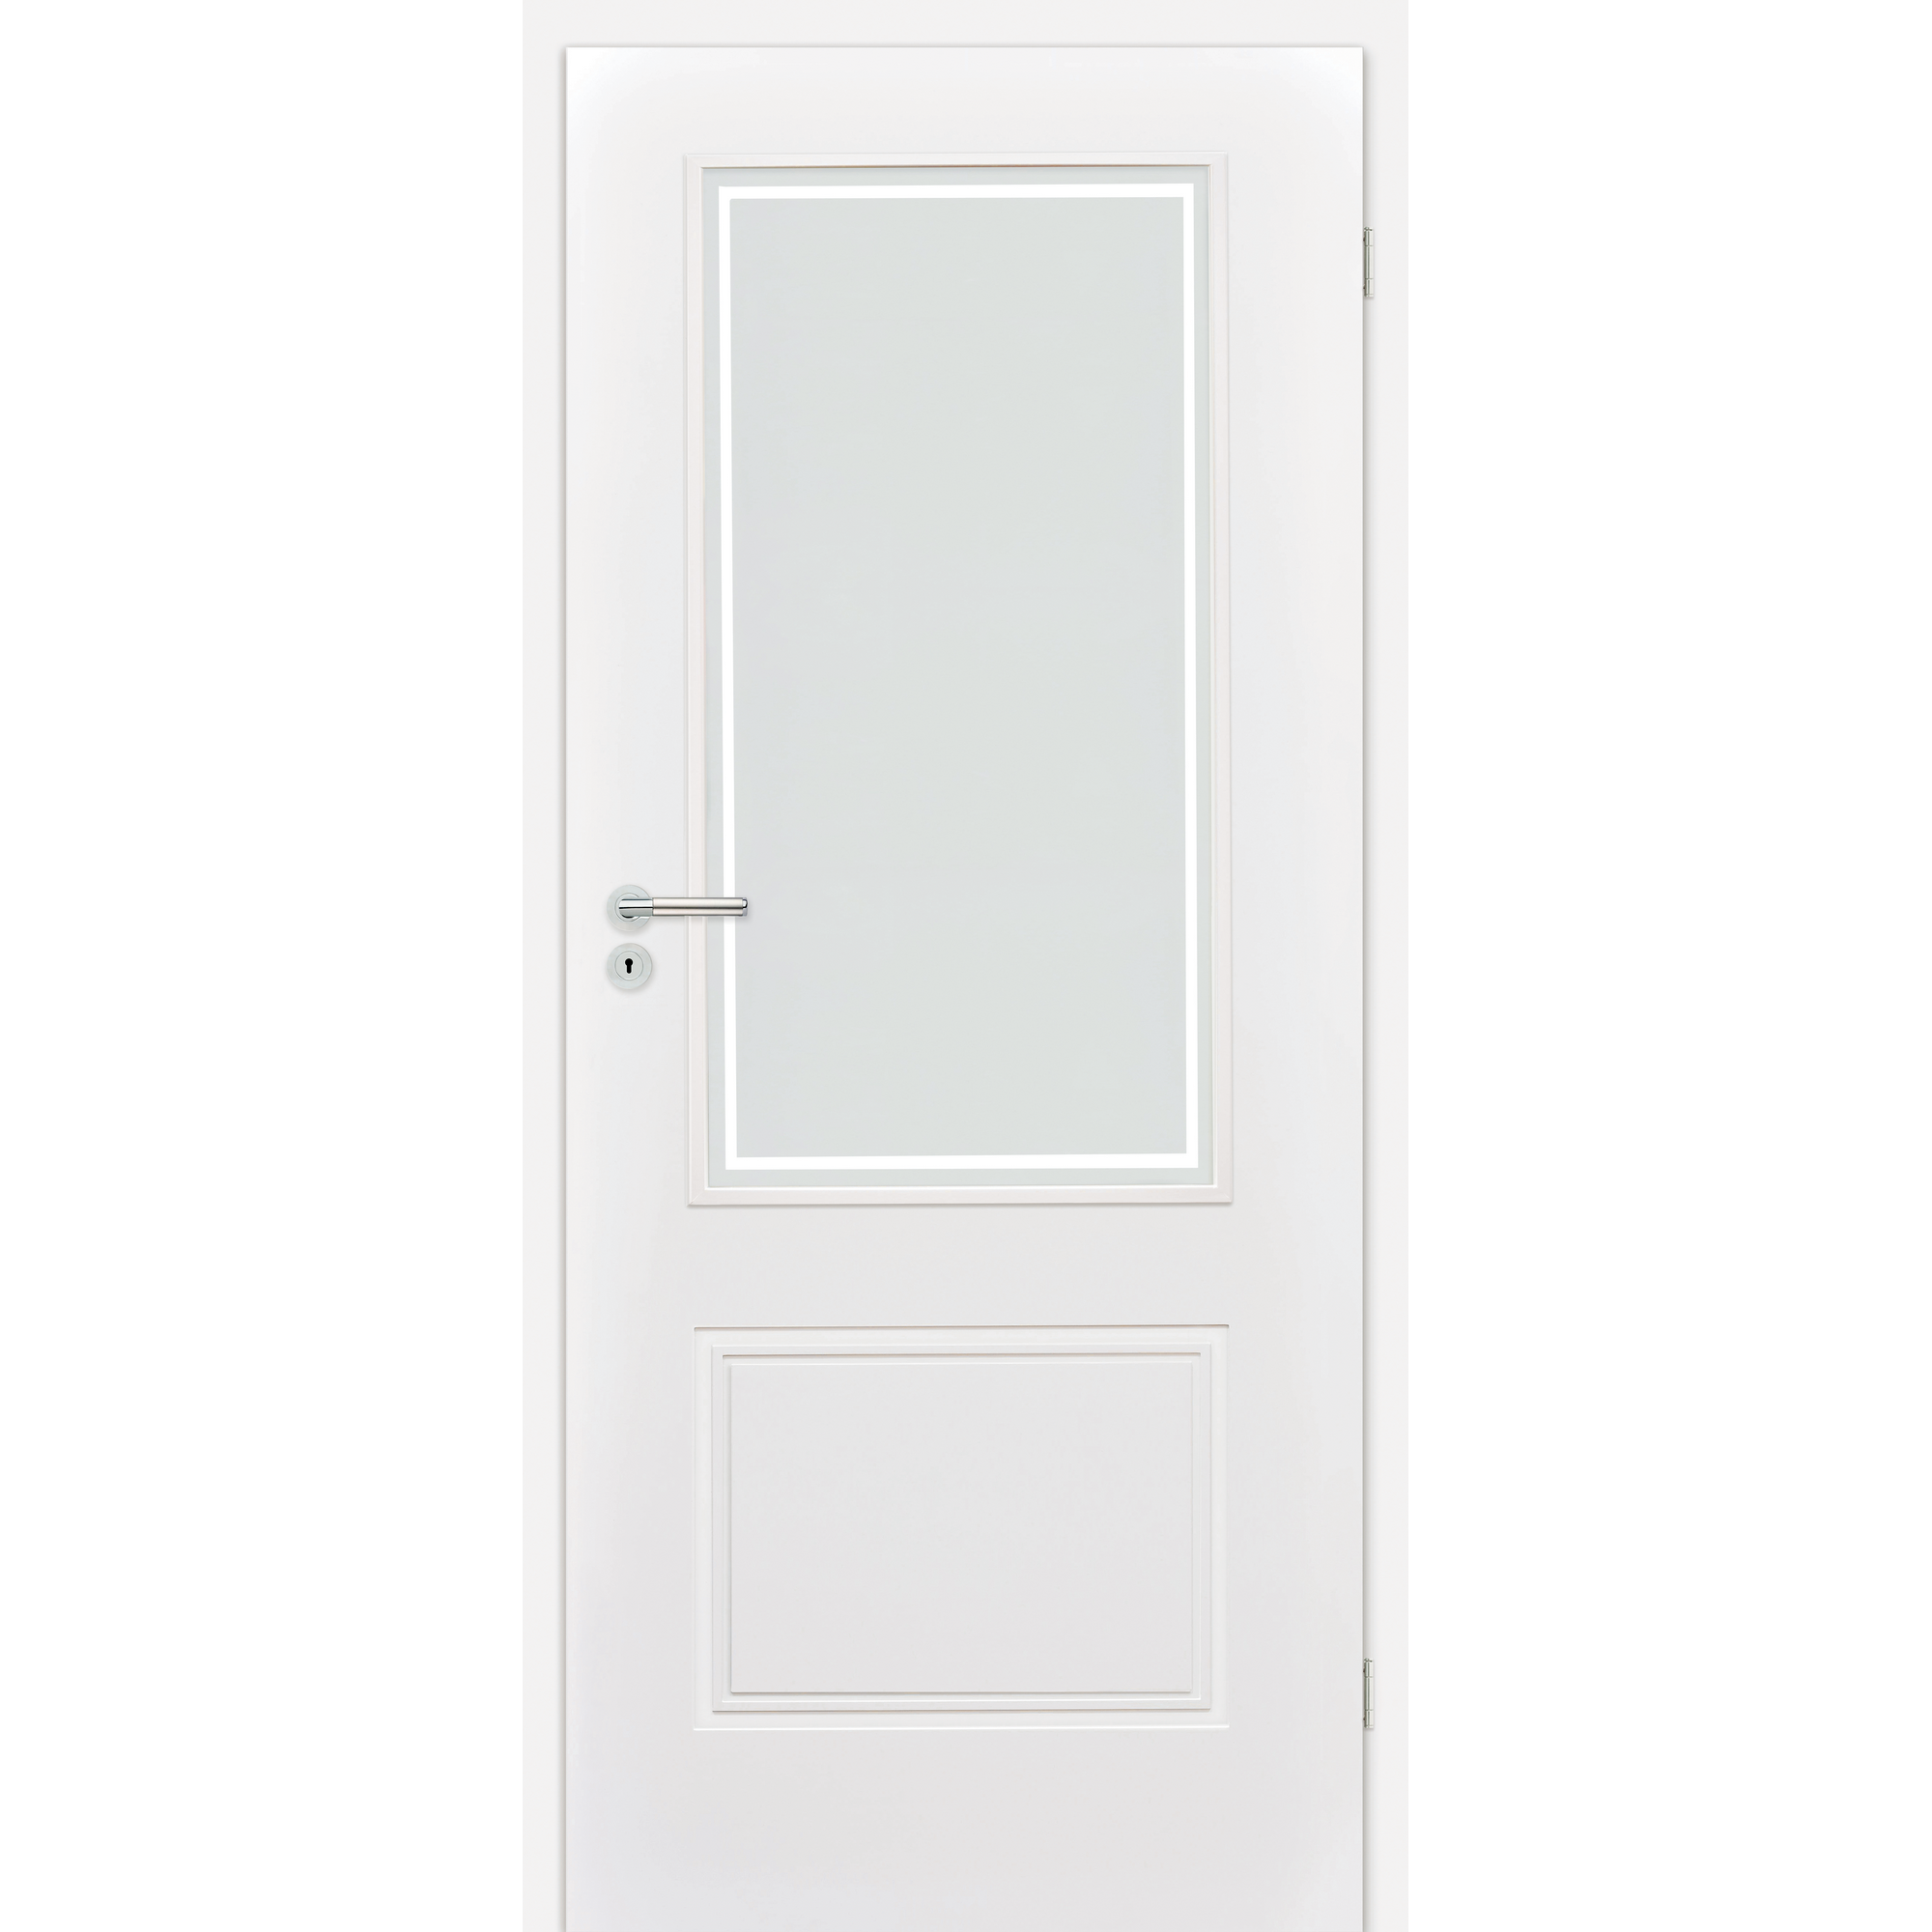 Innentür 'Linea 1.3 RS' mit Lichtausschnitt weiß 198,5 x 86 cm, Rechtsanschlag + product picture